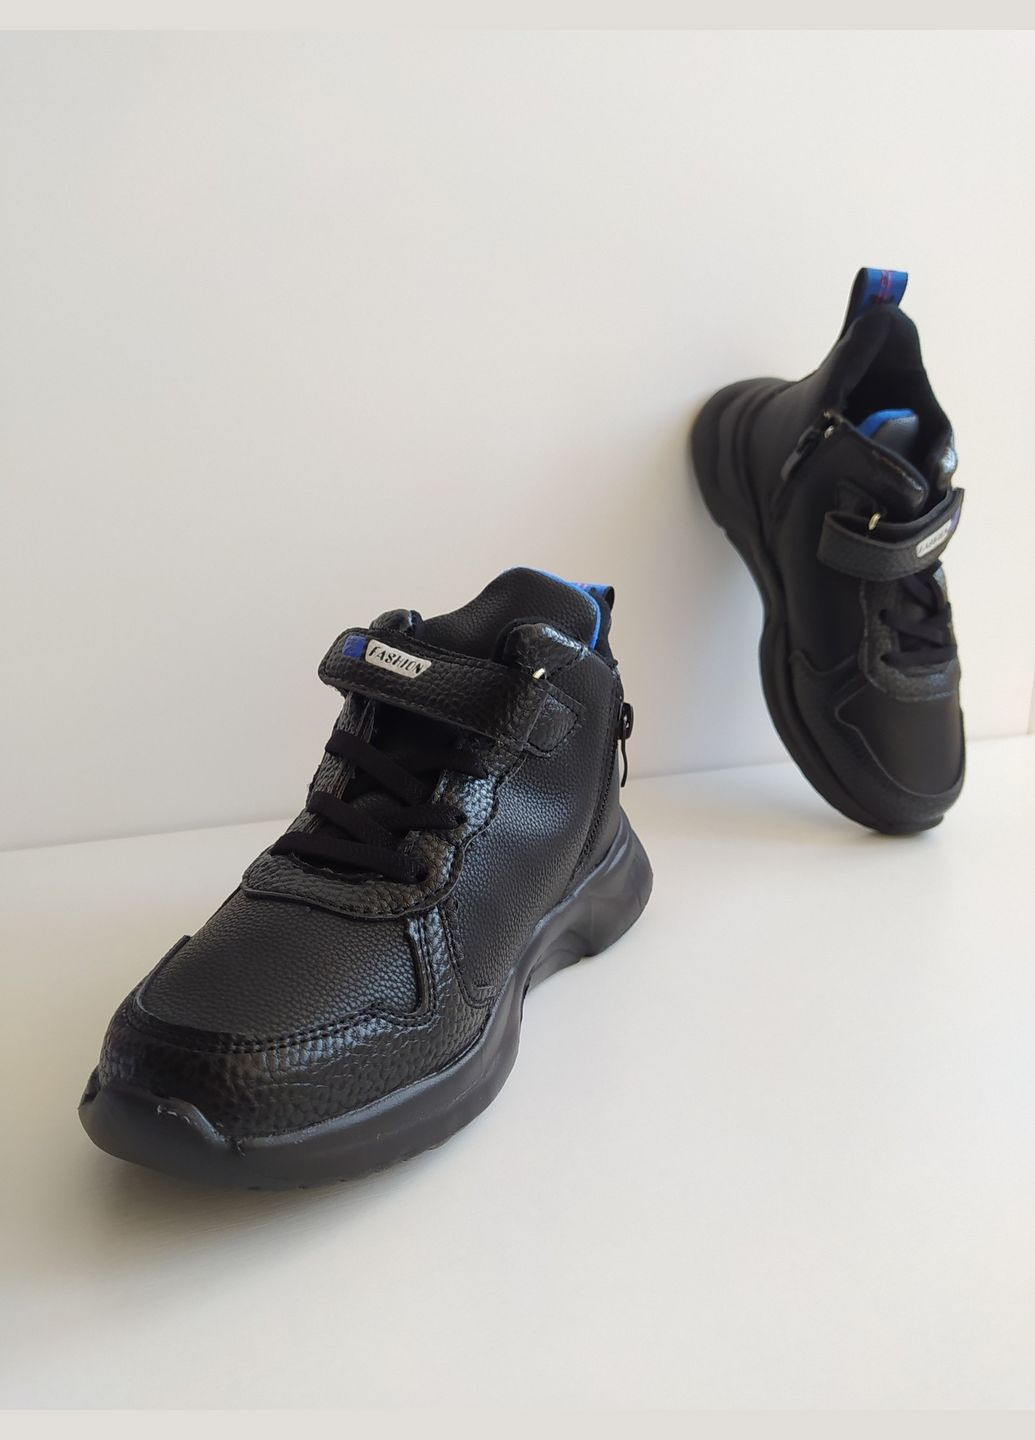 Черные детские кроссовки 31 г 19 см черный артикул к141 W.Niko